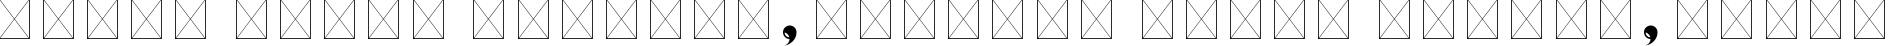 Пример написания шрифтом Eviolite B Regular текста на белорусском